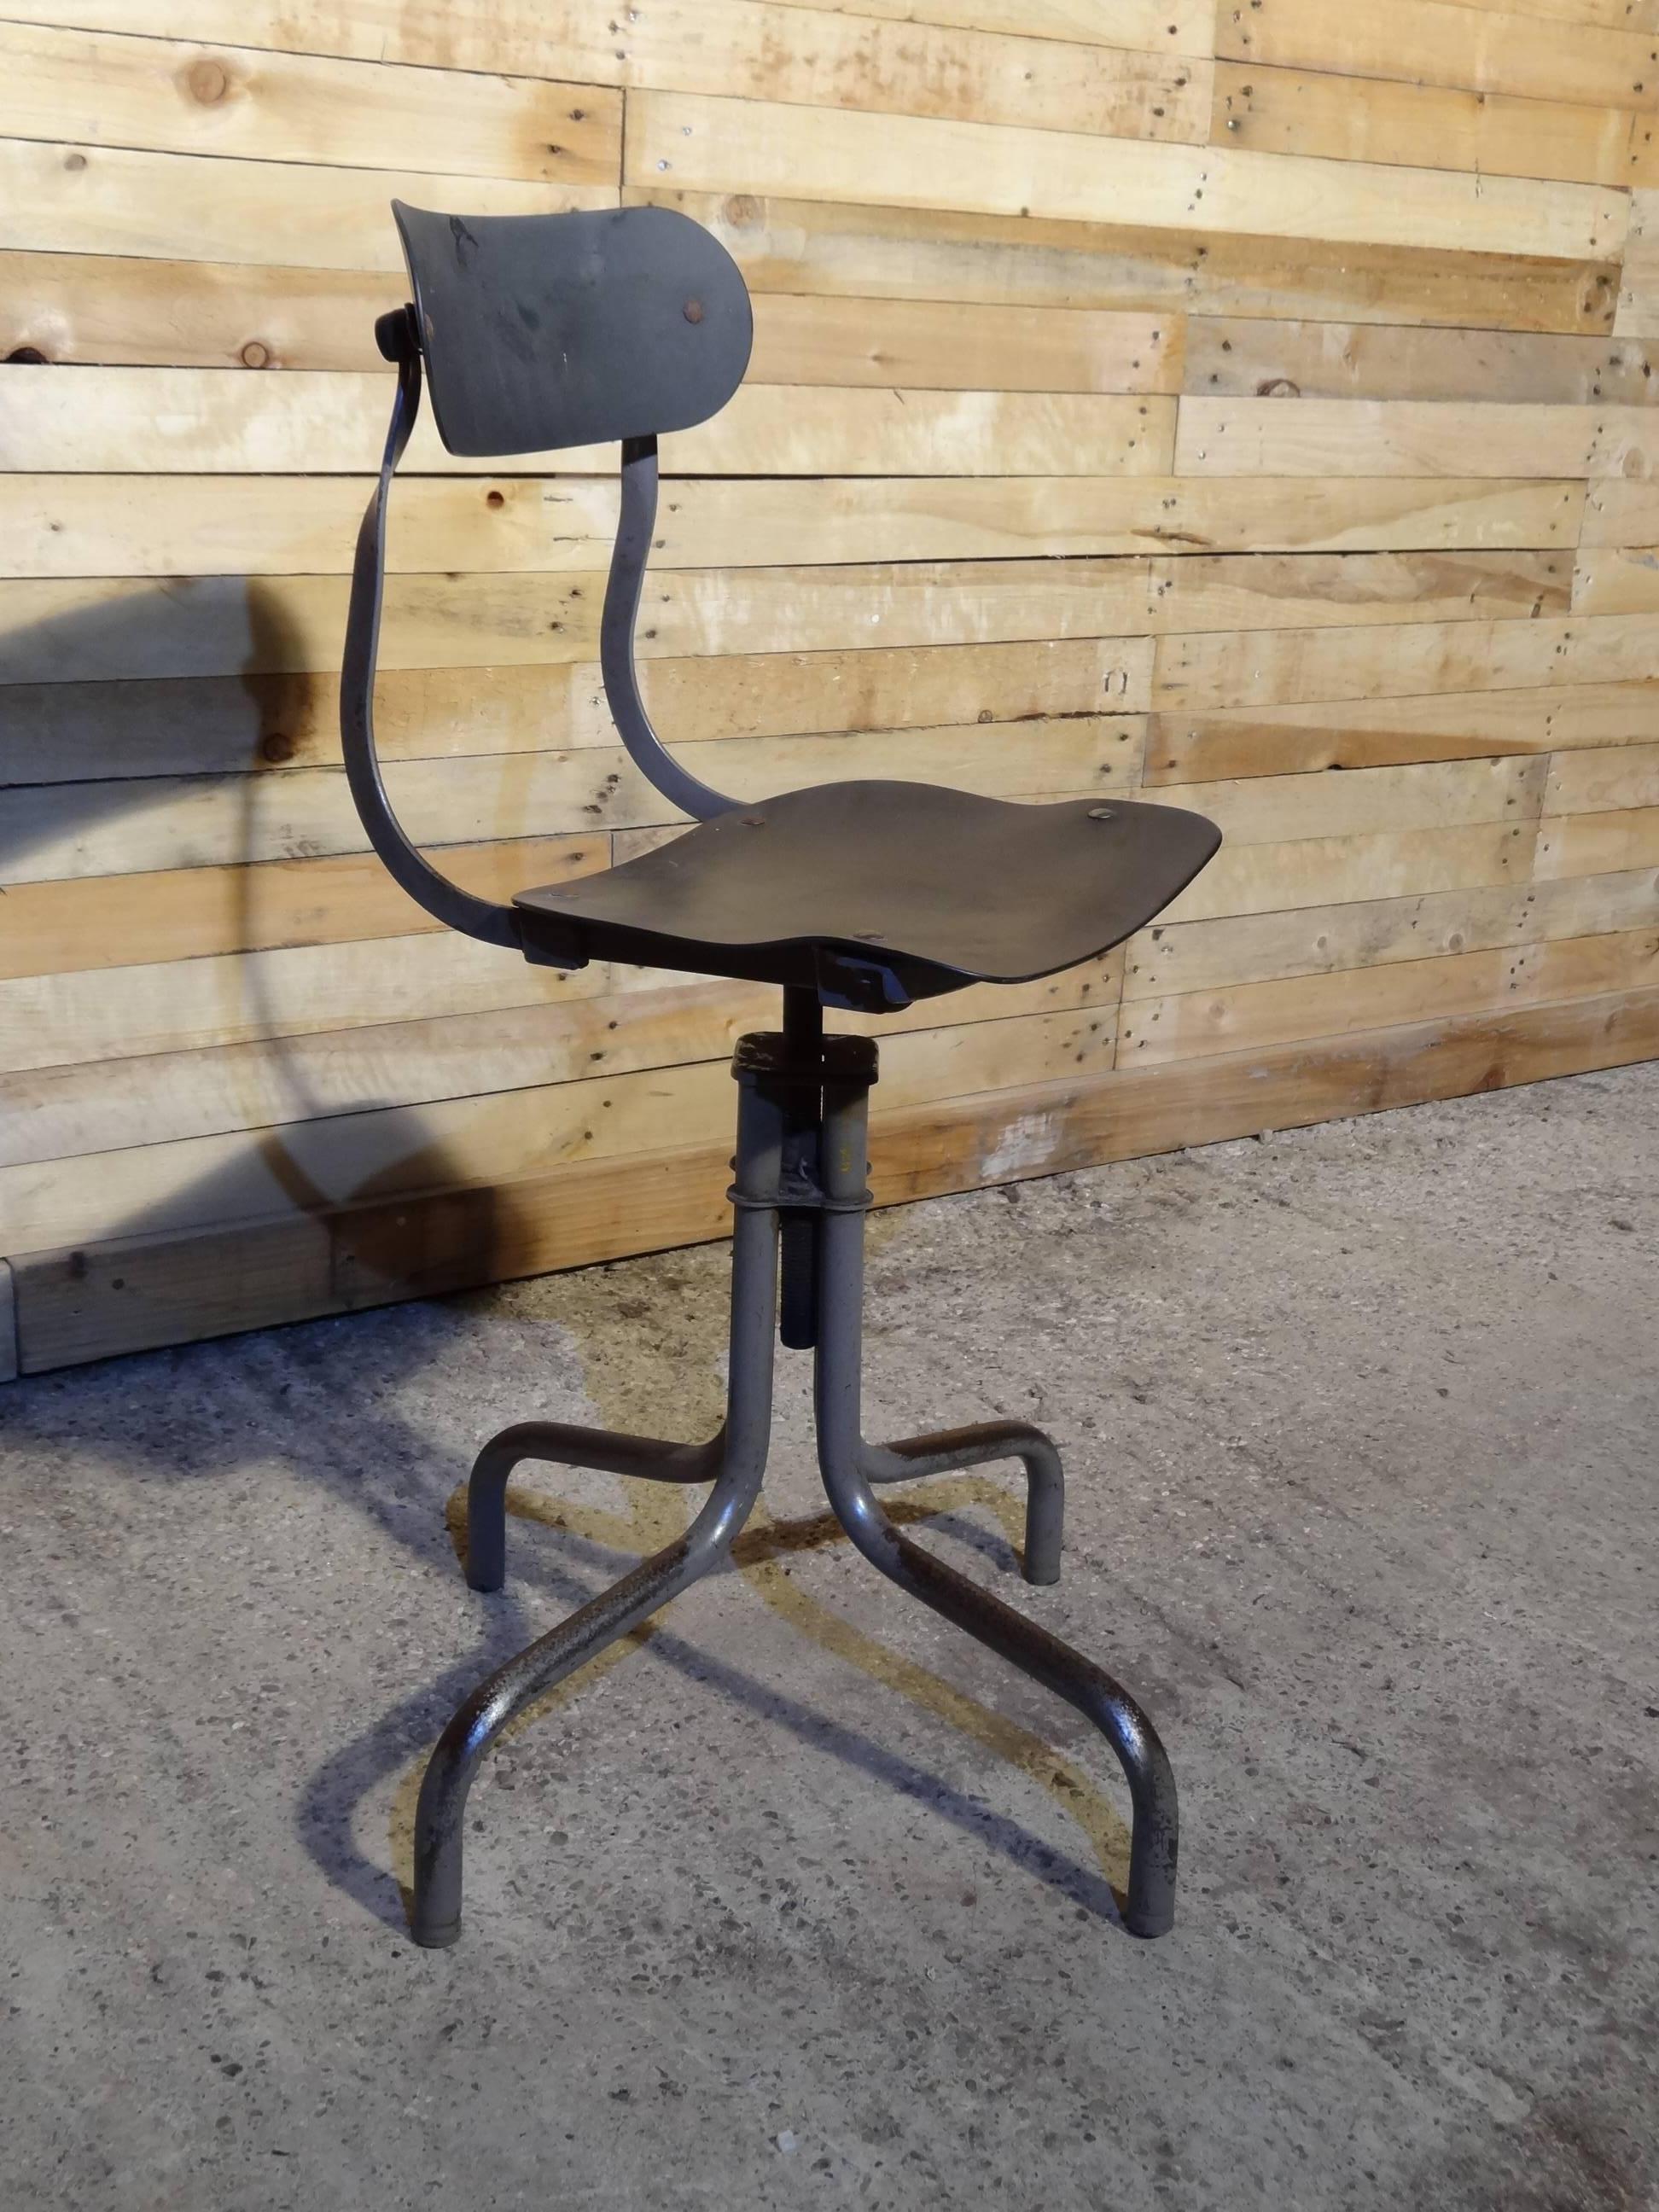 20ième siècle Tan-Sad Chair Co. 1930s Industrial Metal Height Adjustable Sewing Stool (Tabouret de couture en métal réglable en hauteur) en vente